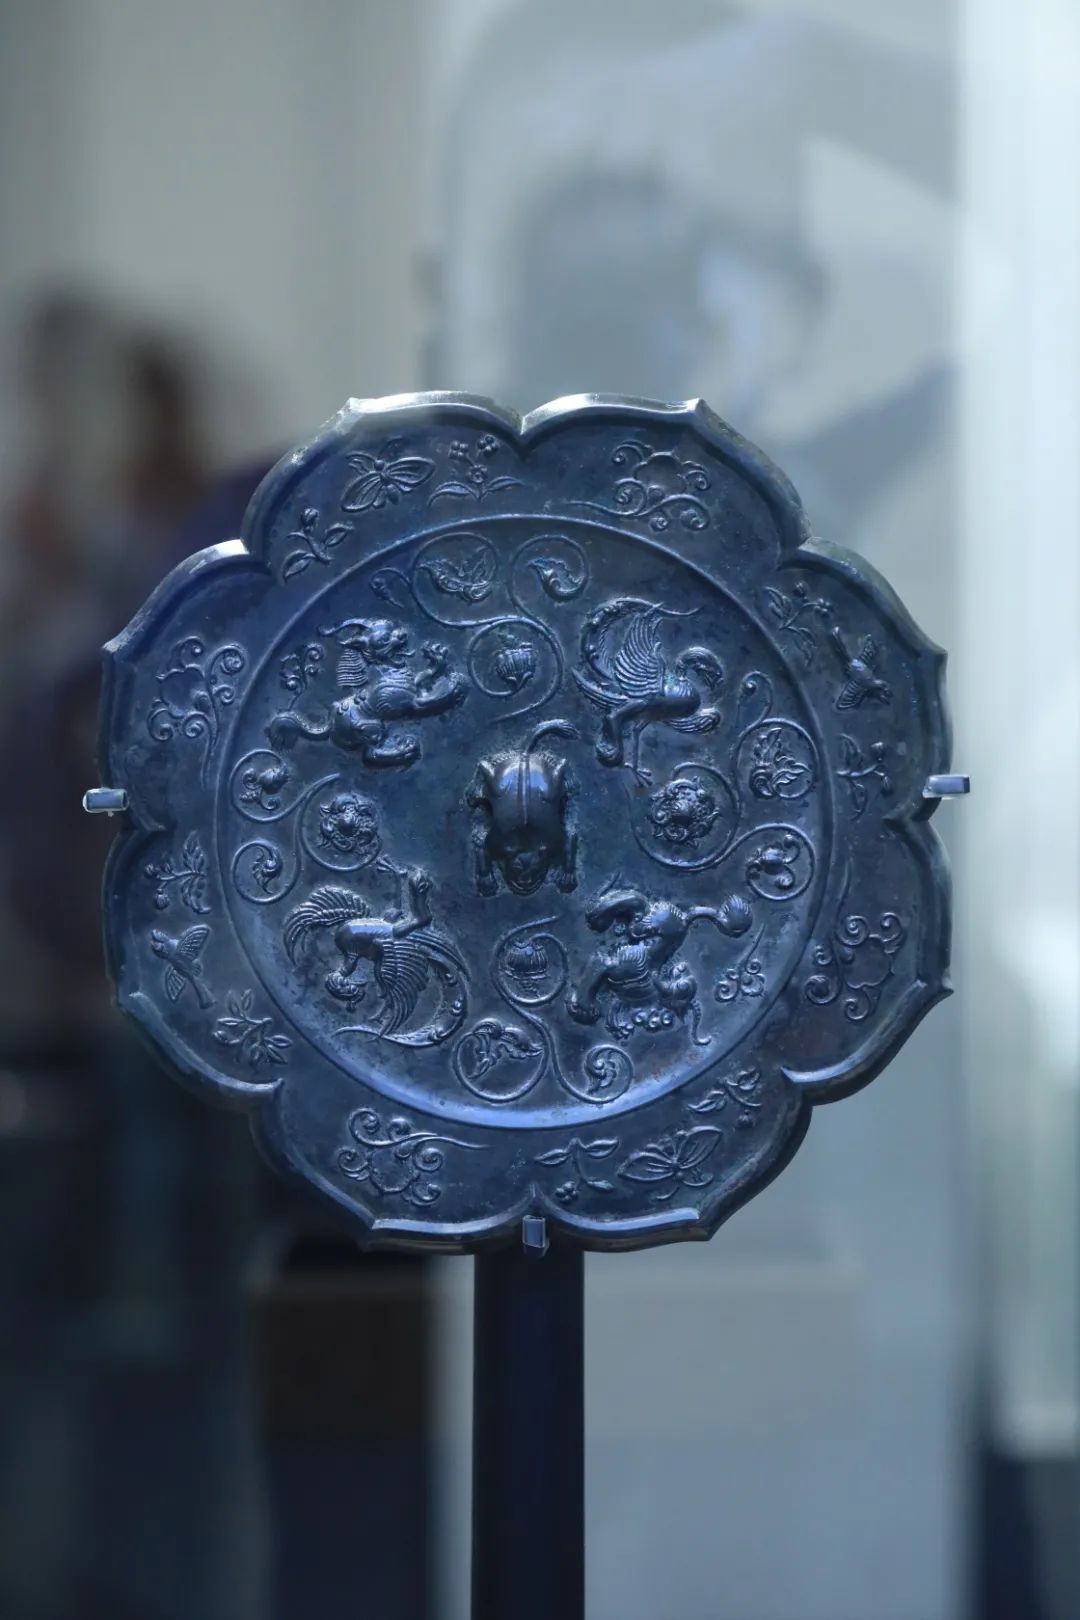 文物时光丨千年古铜镜的秘密